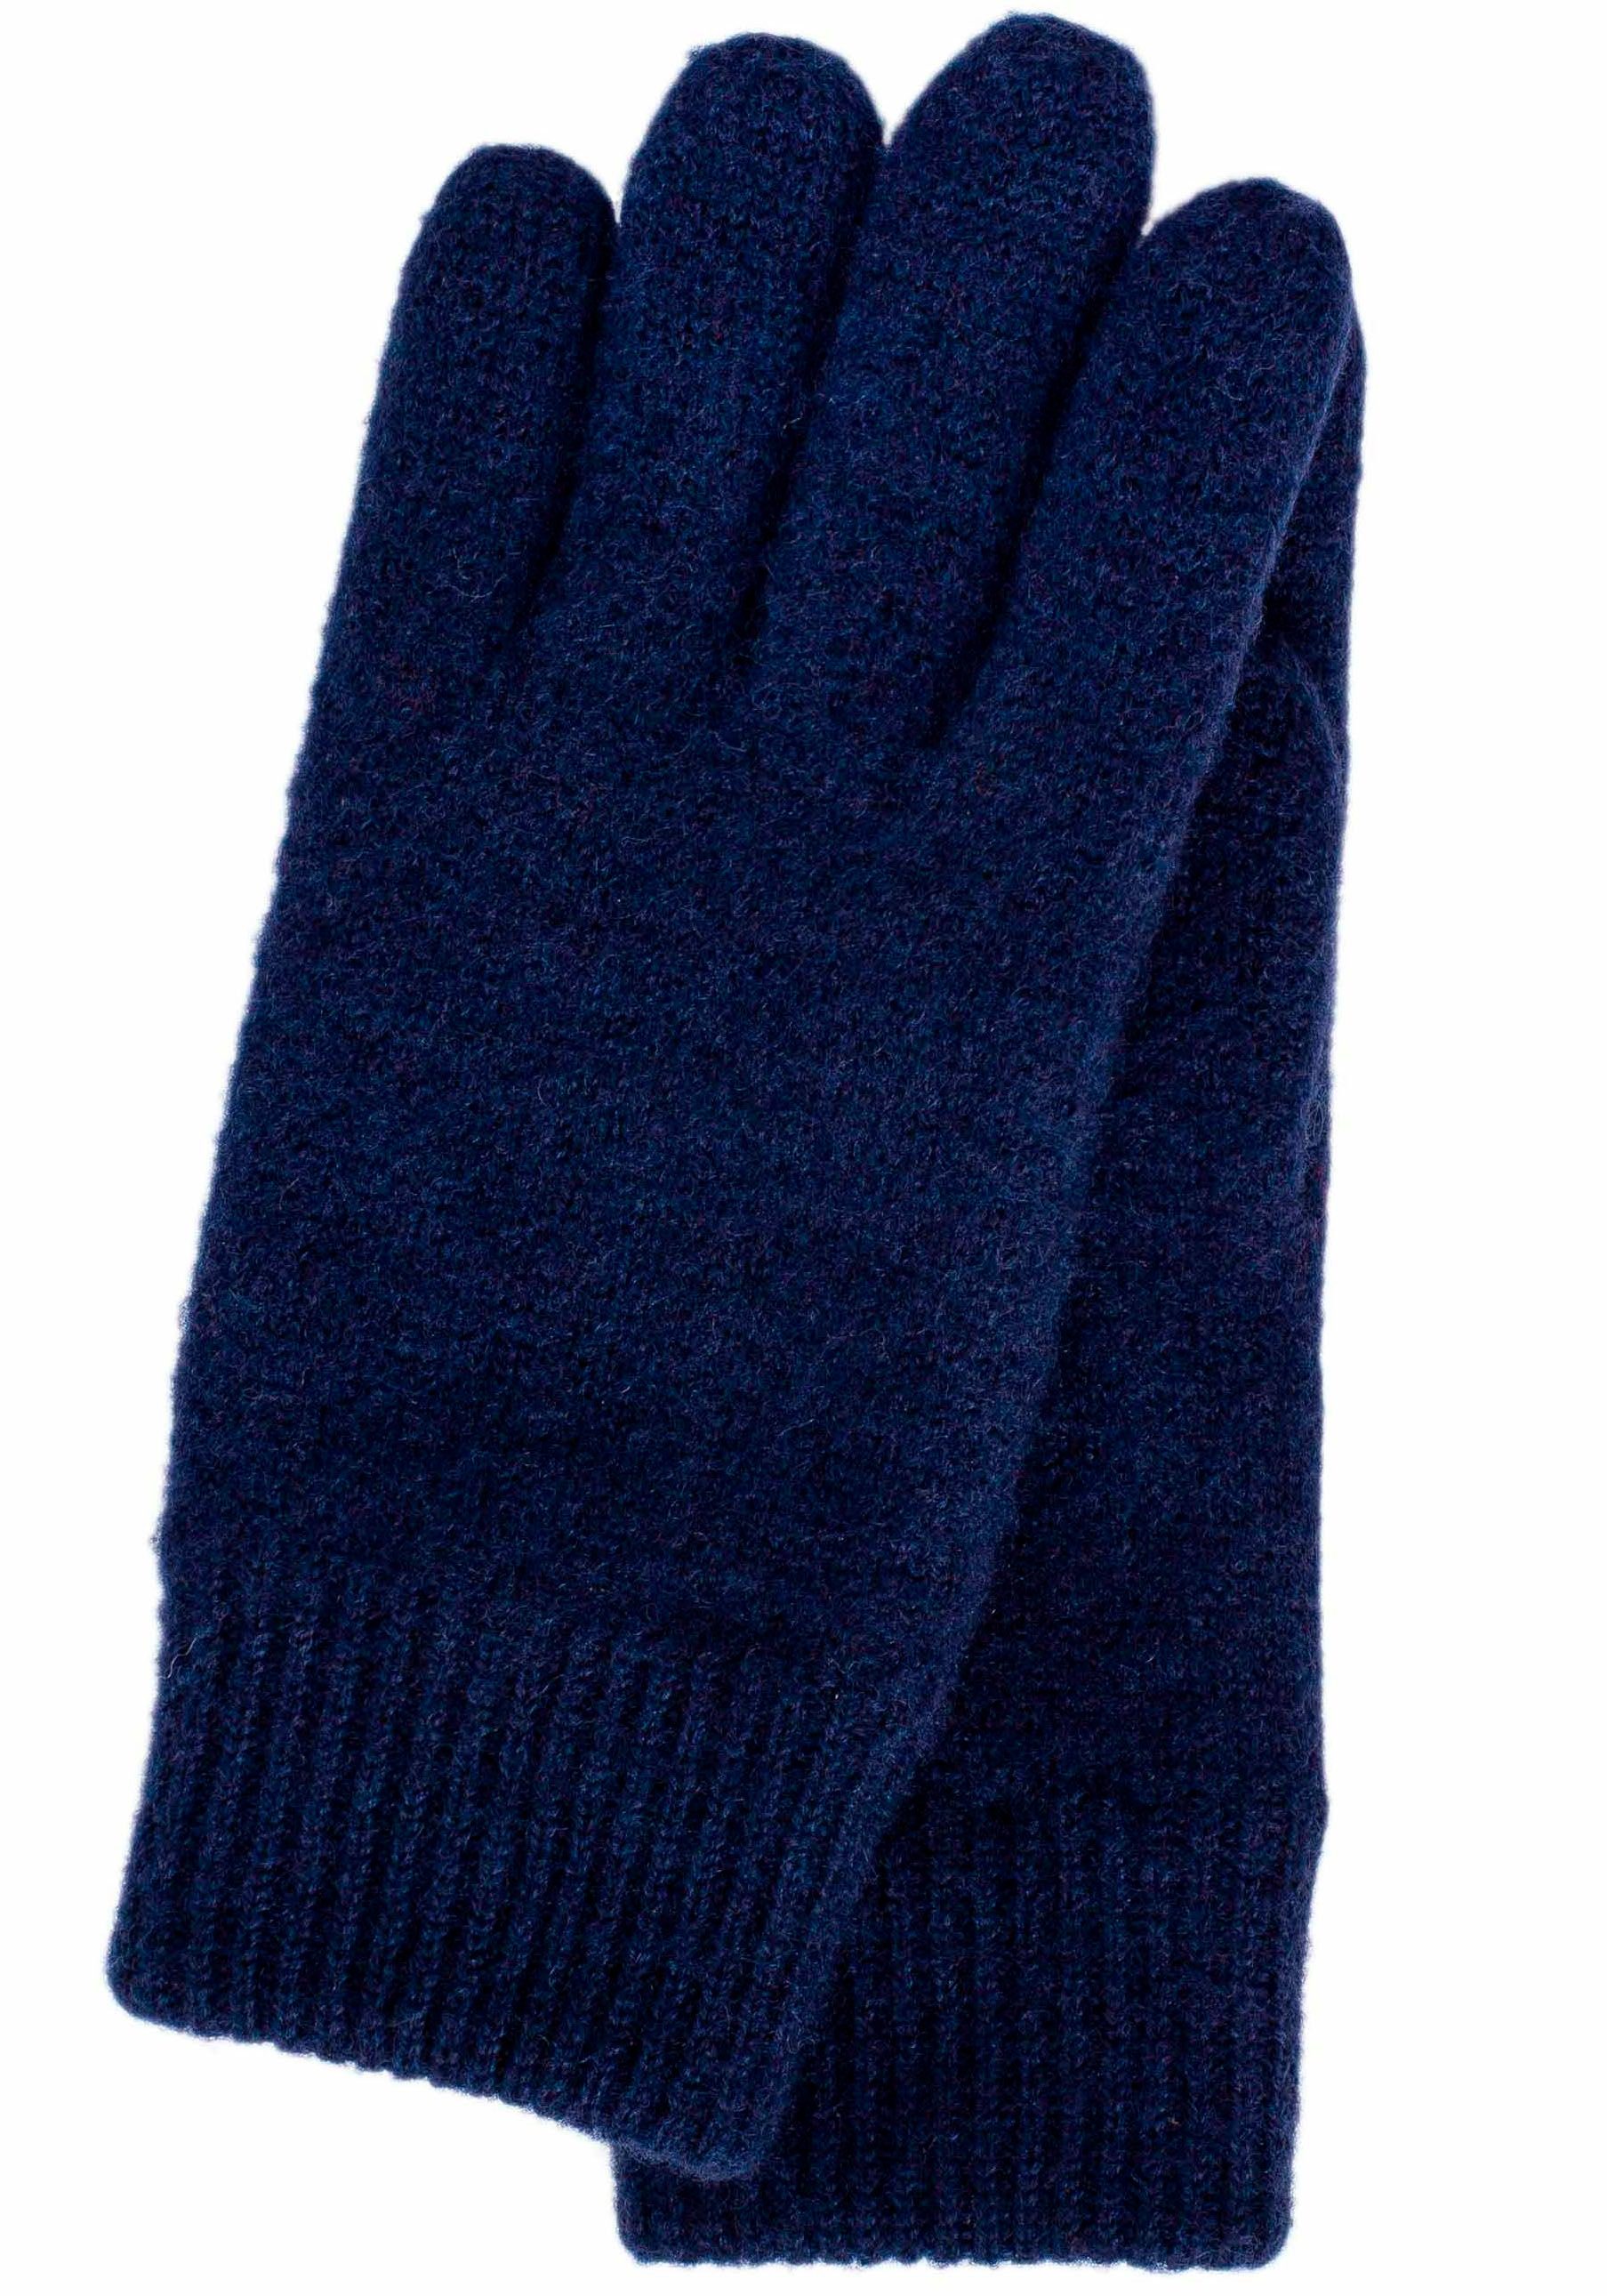 KESSLER Strickhandschuhe wind- und wasserabweisend, Strickbund dark blue